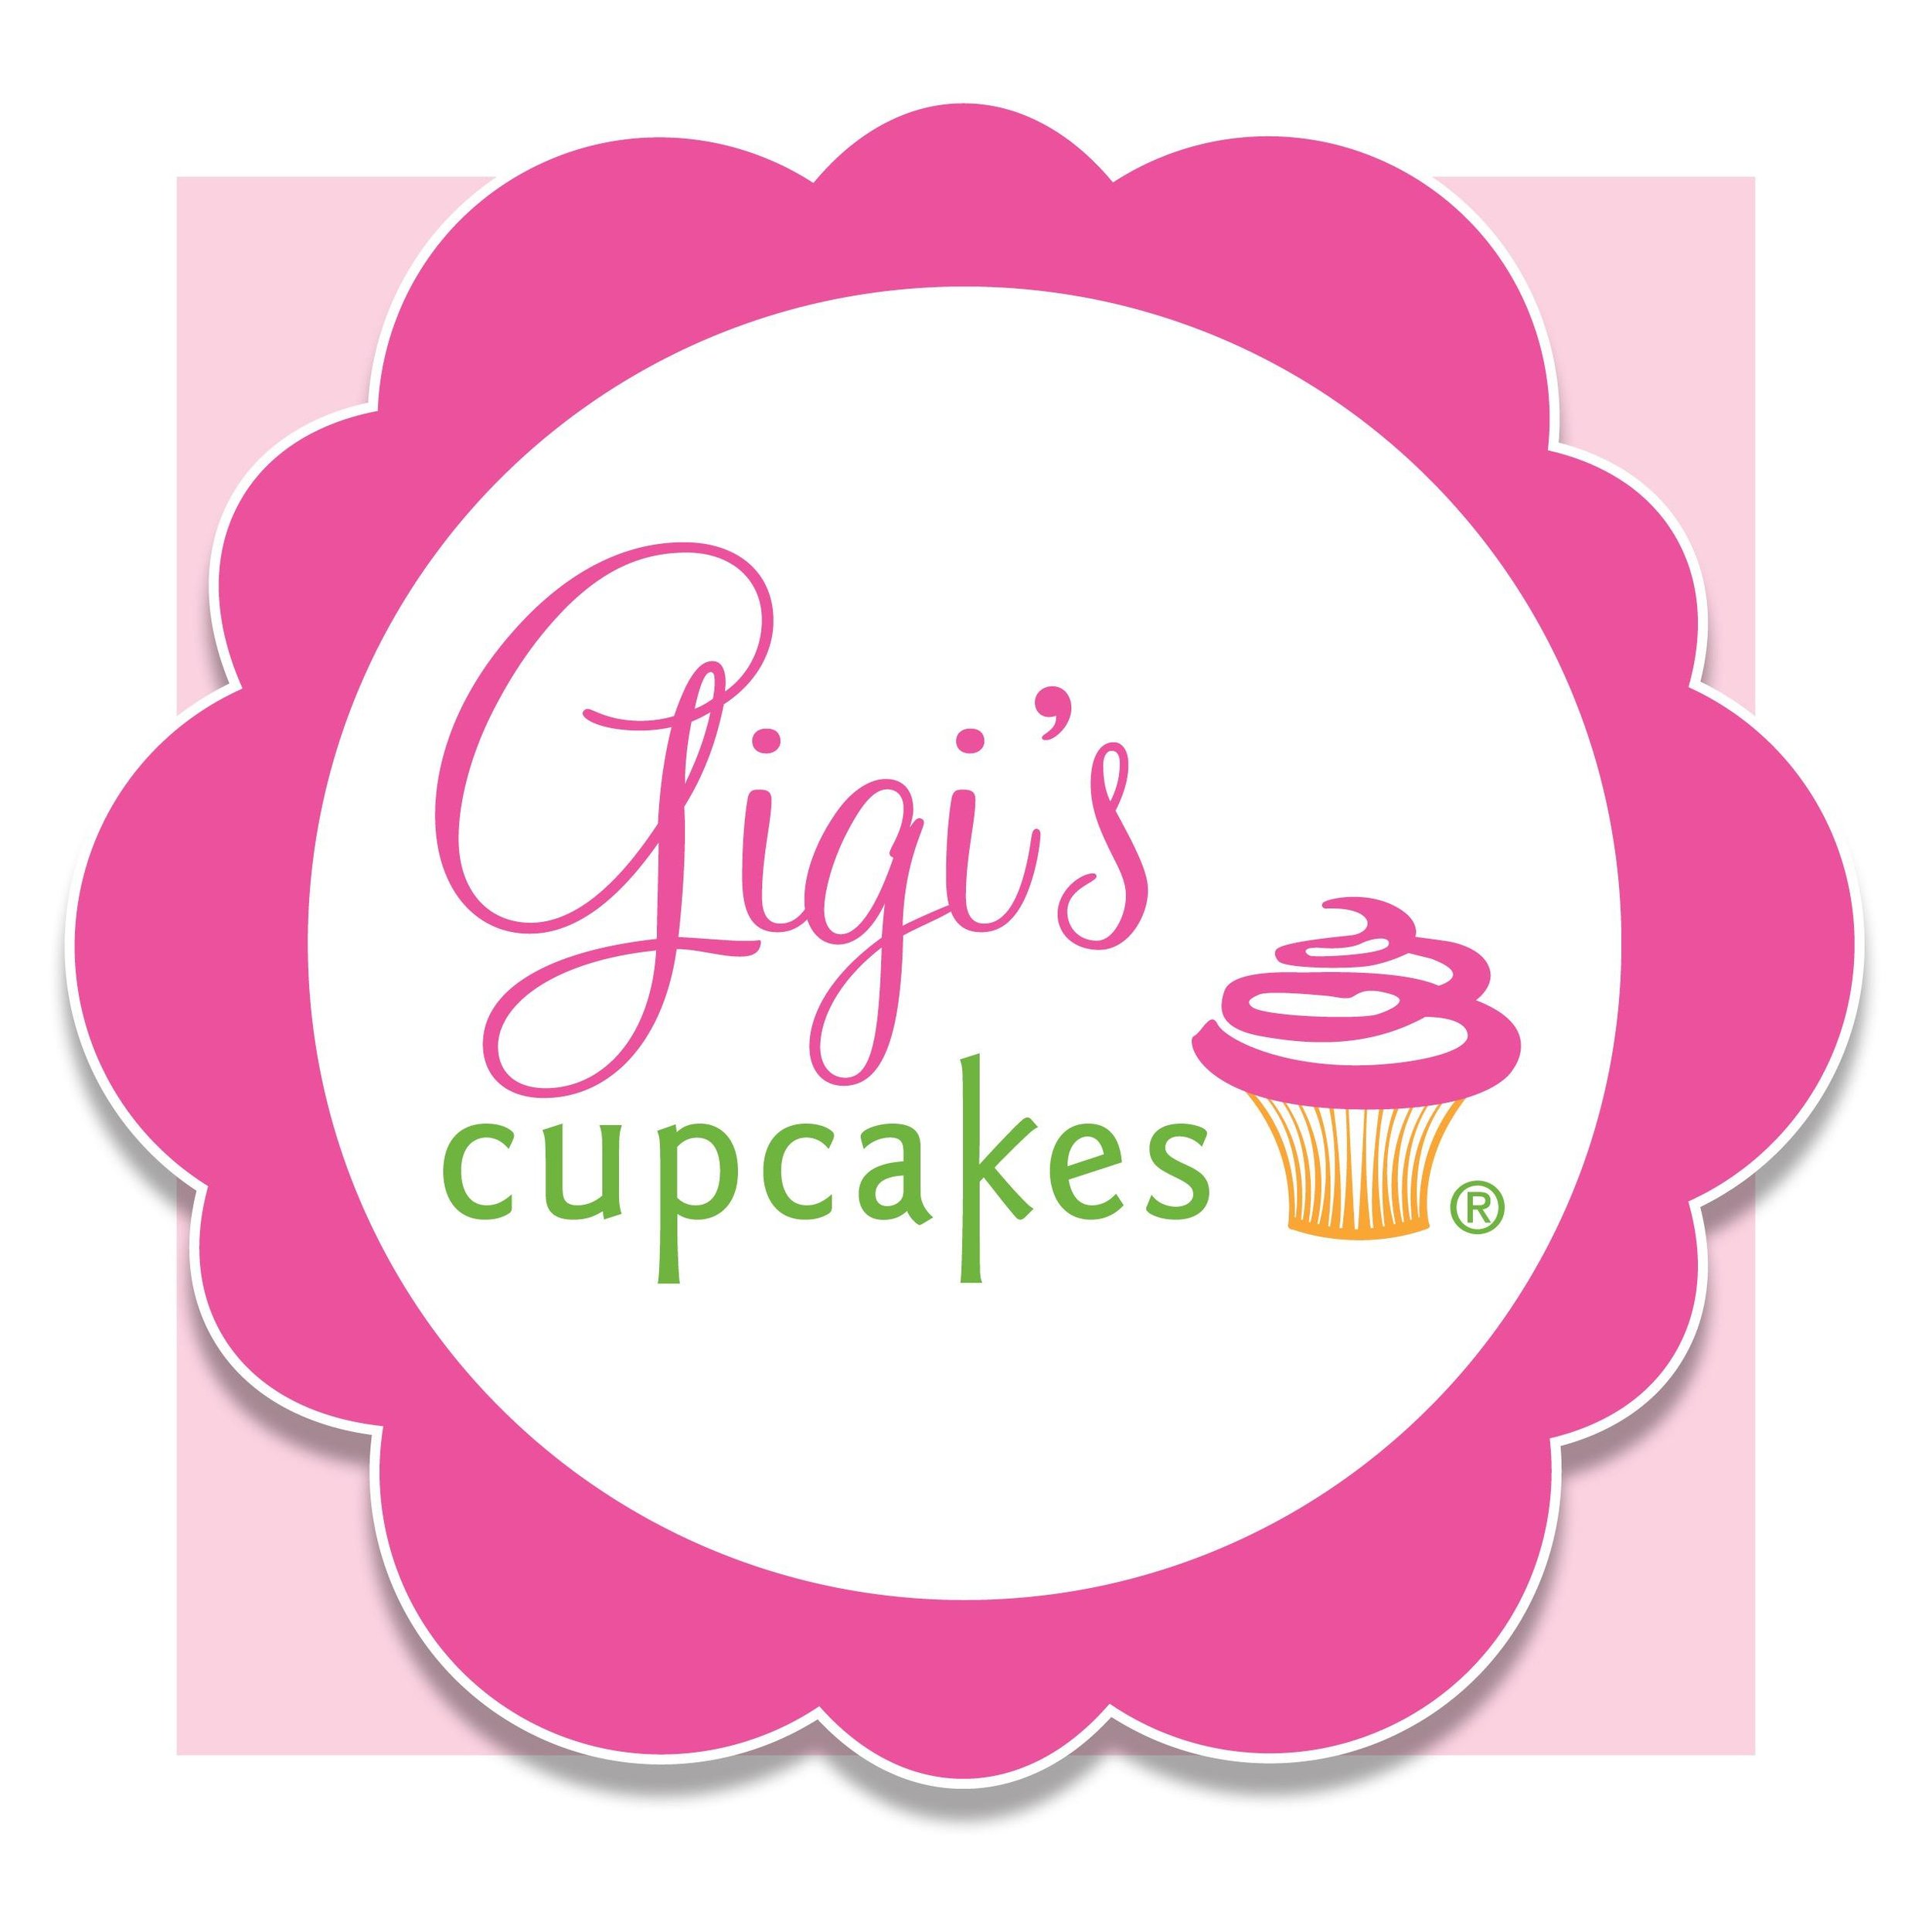 Gigis Cupcakes.jpeg